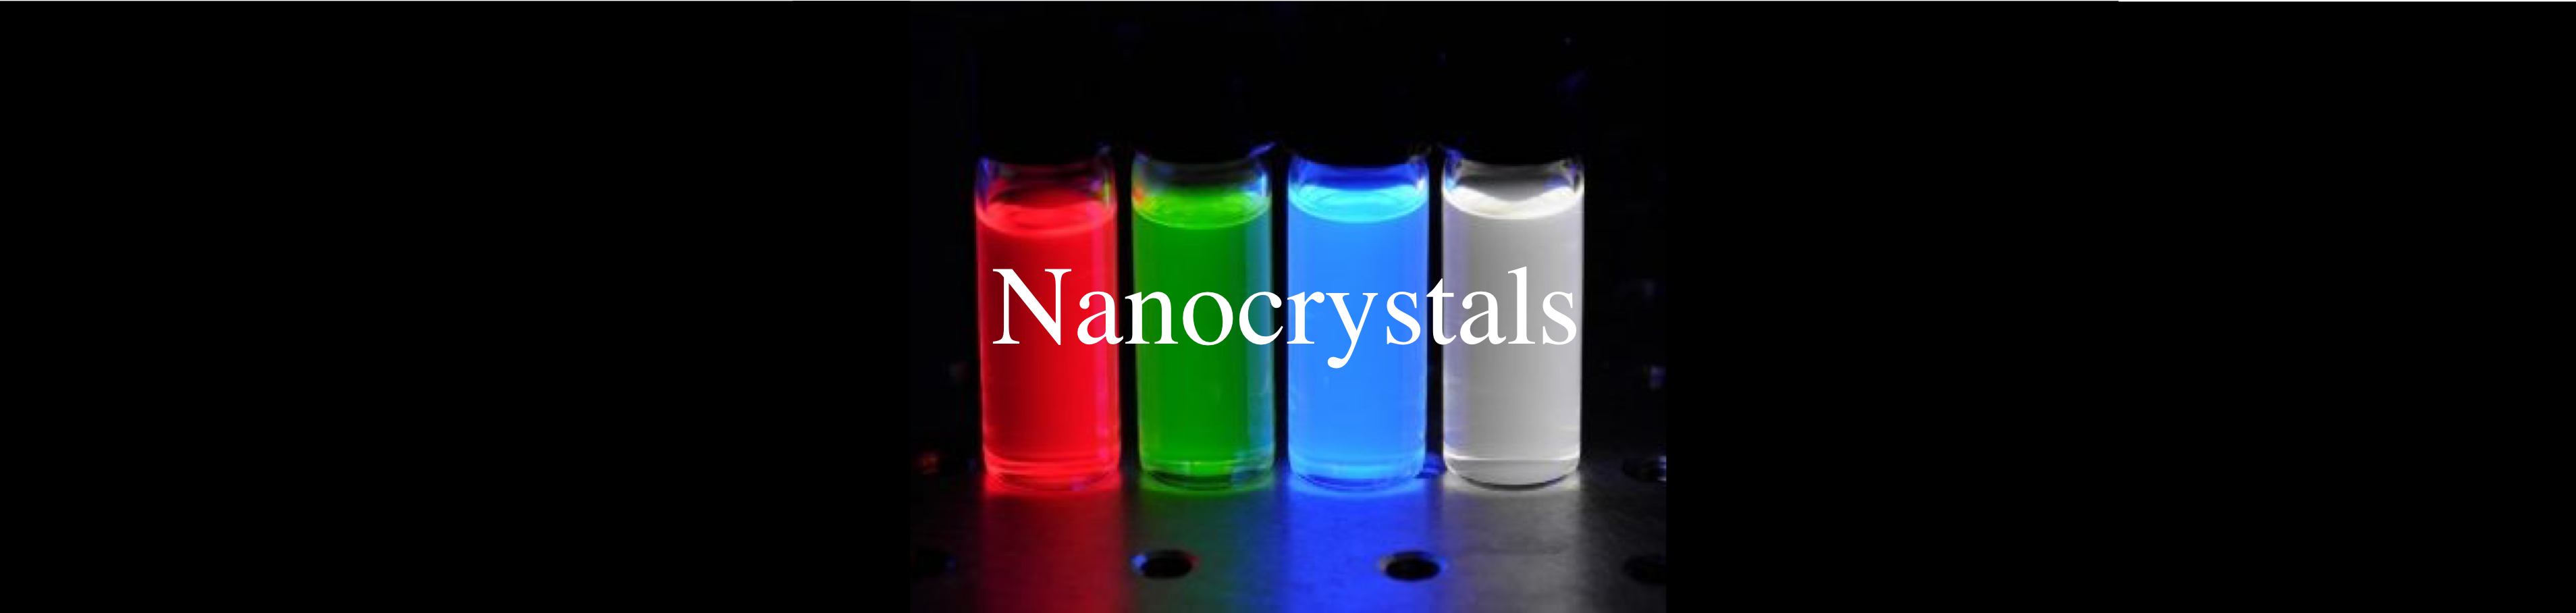 nanocrystals